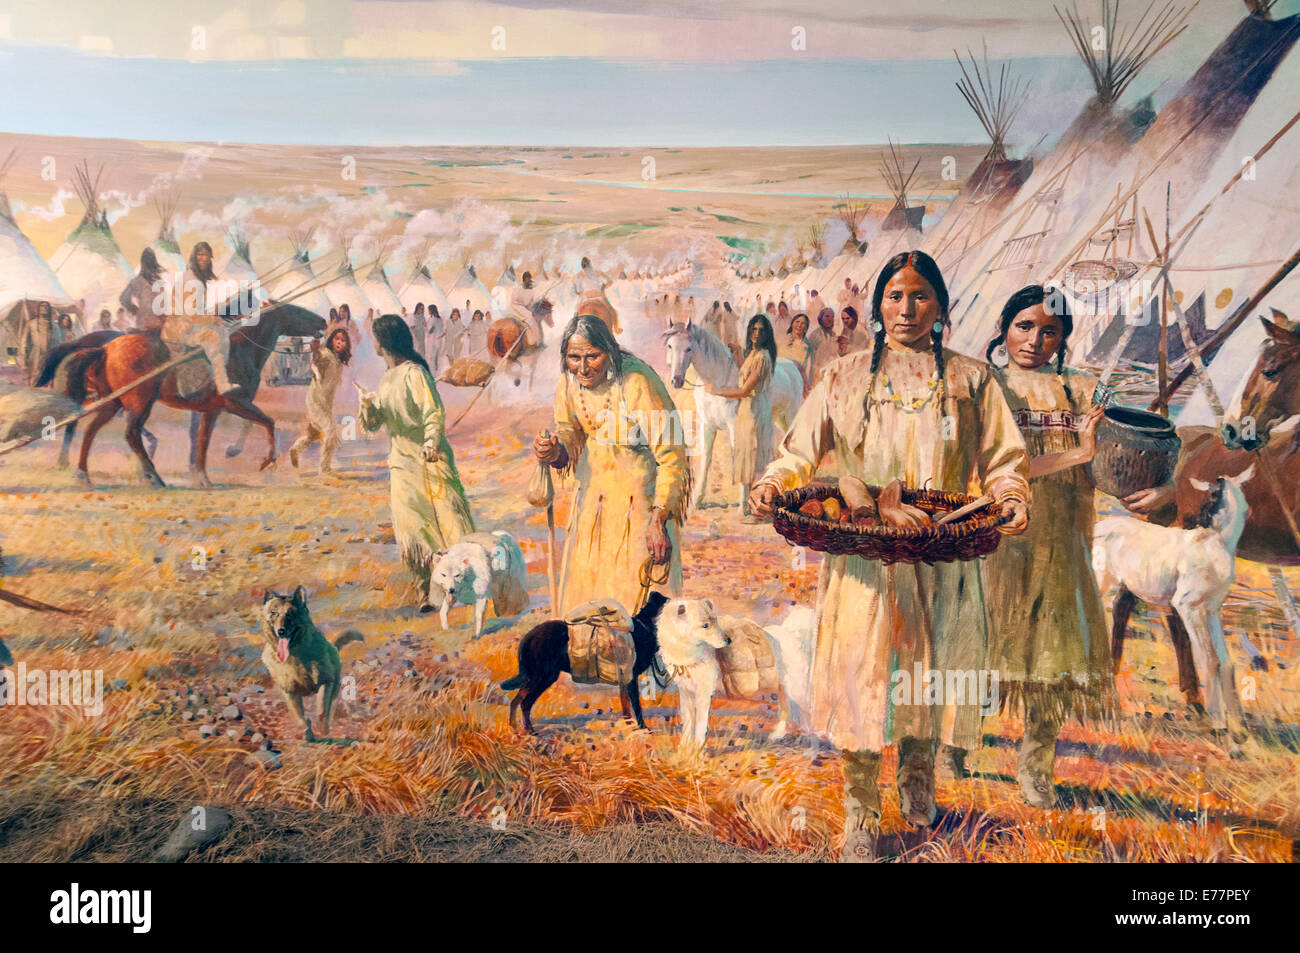 Elk203-5285 Canada, Alberta, Edmonton, Royal Alberta Museum, Indian camp pittura Foto Stock